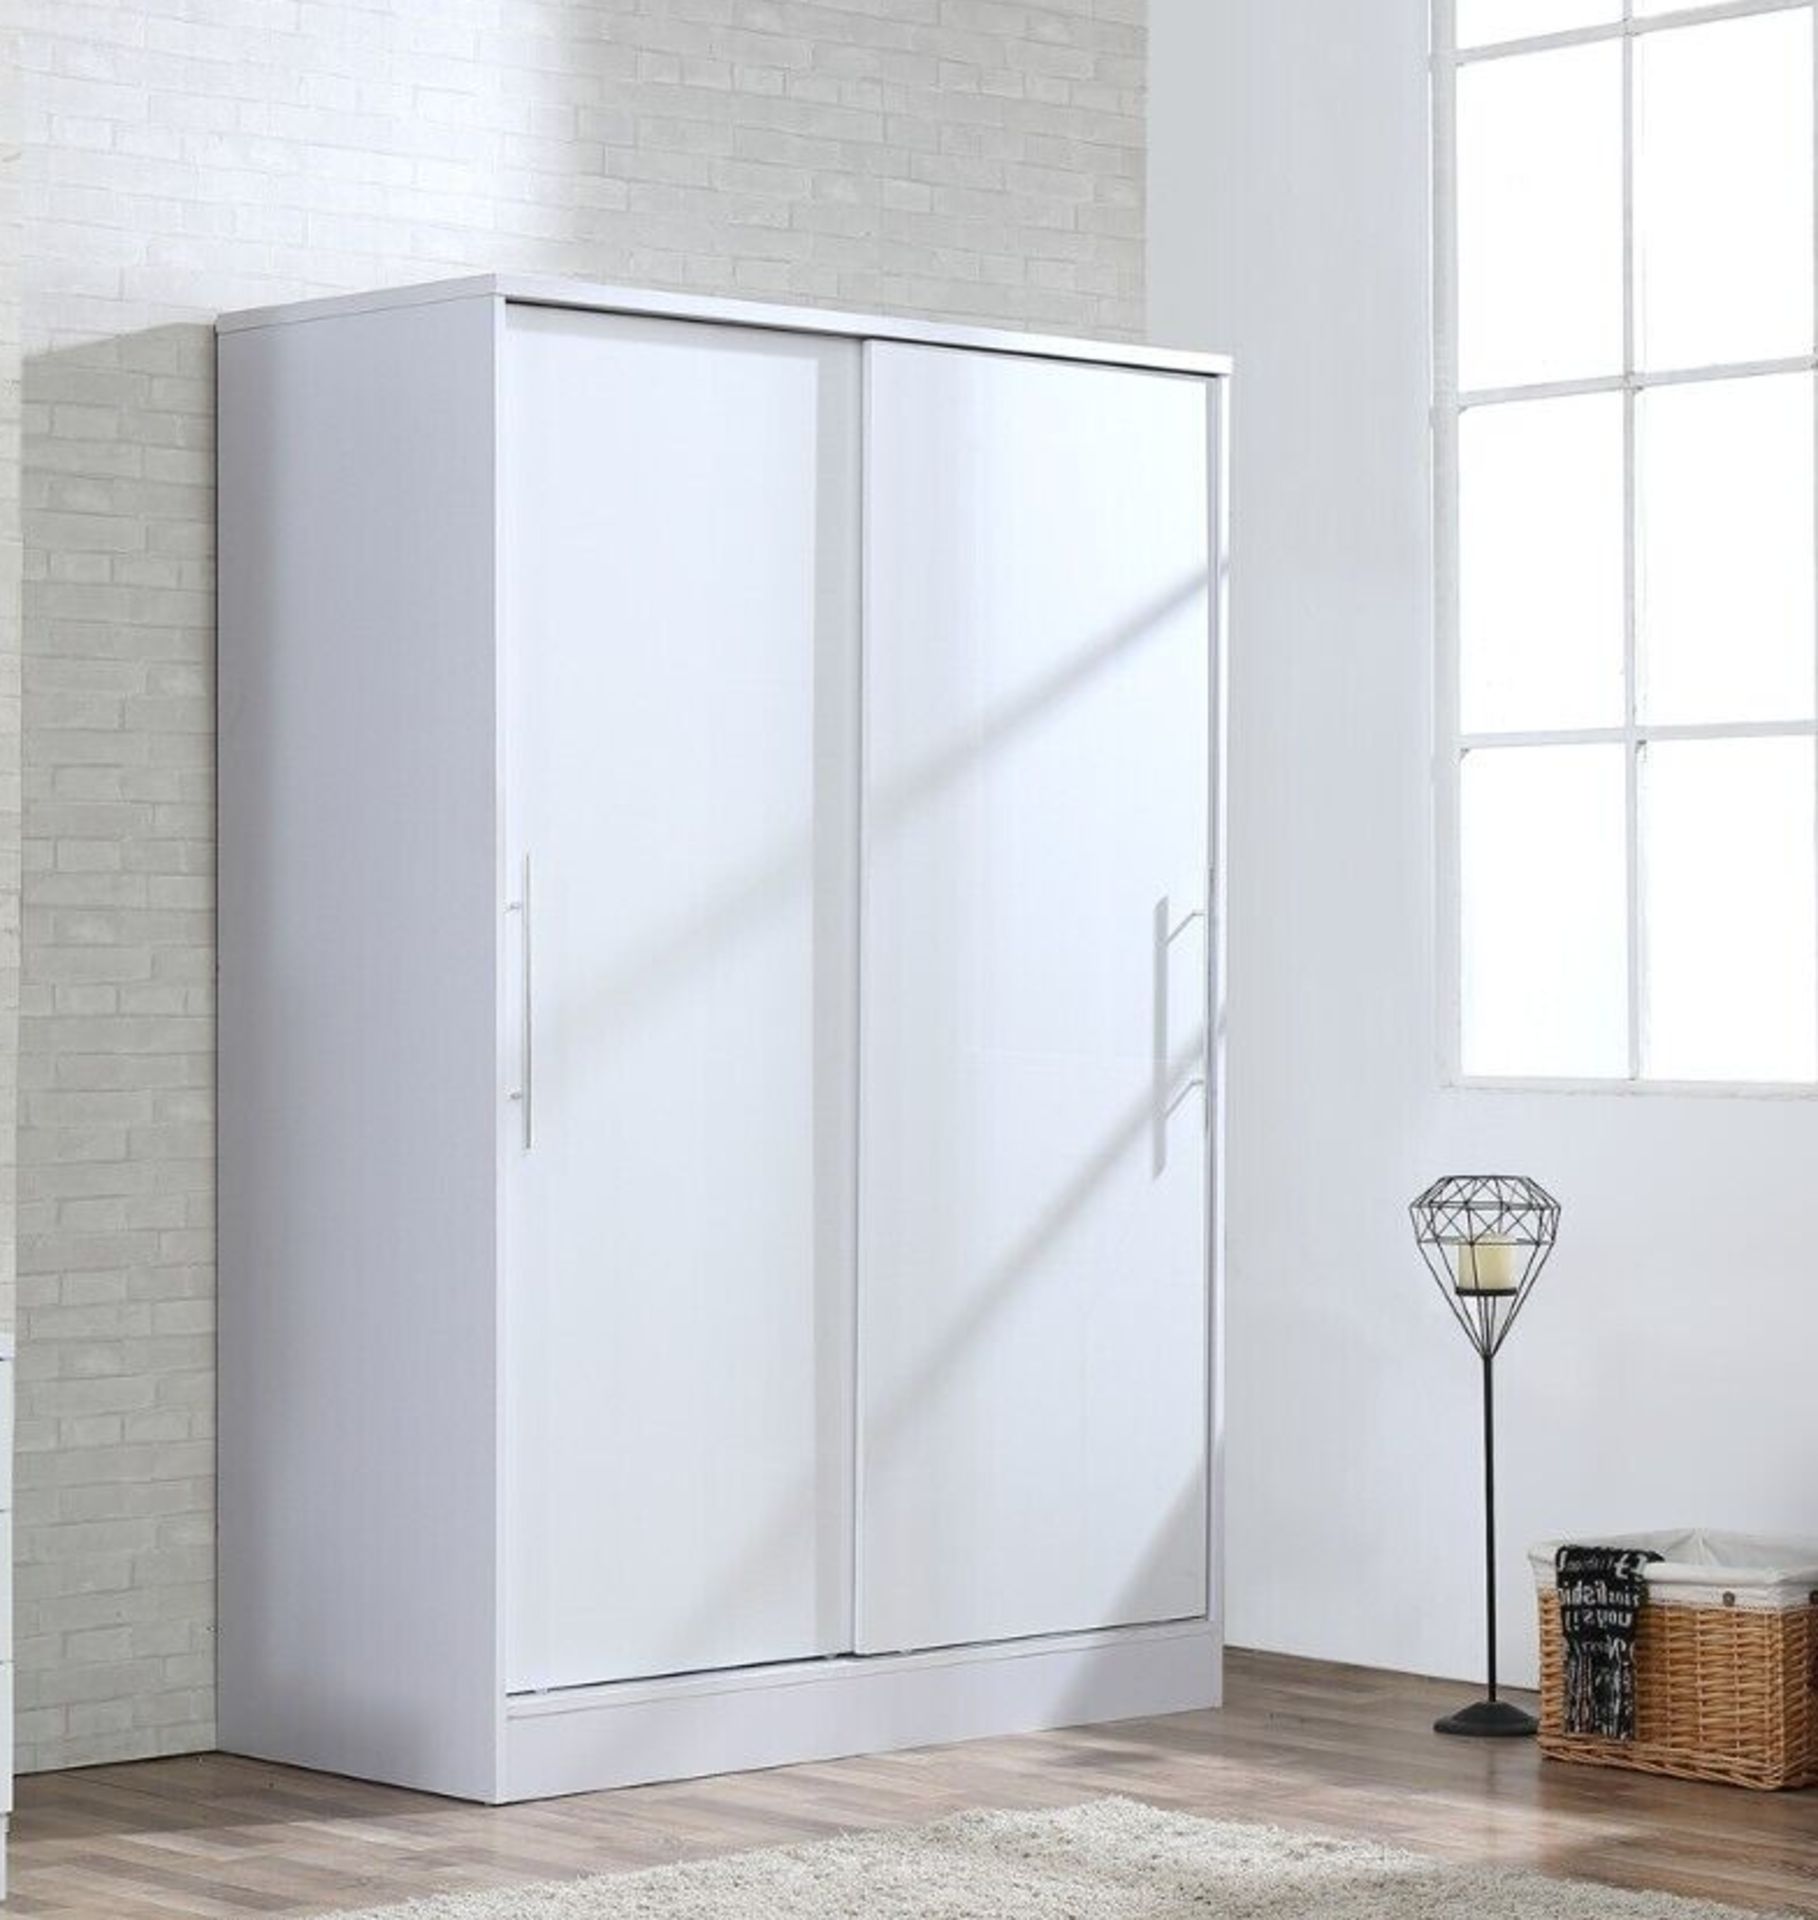 2 DOOR SLIDING WARDROBE XL HIGH GLOSS BEDROOM FURNITURE WHITE ON WHITE